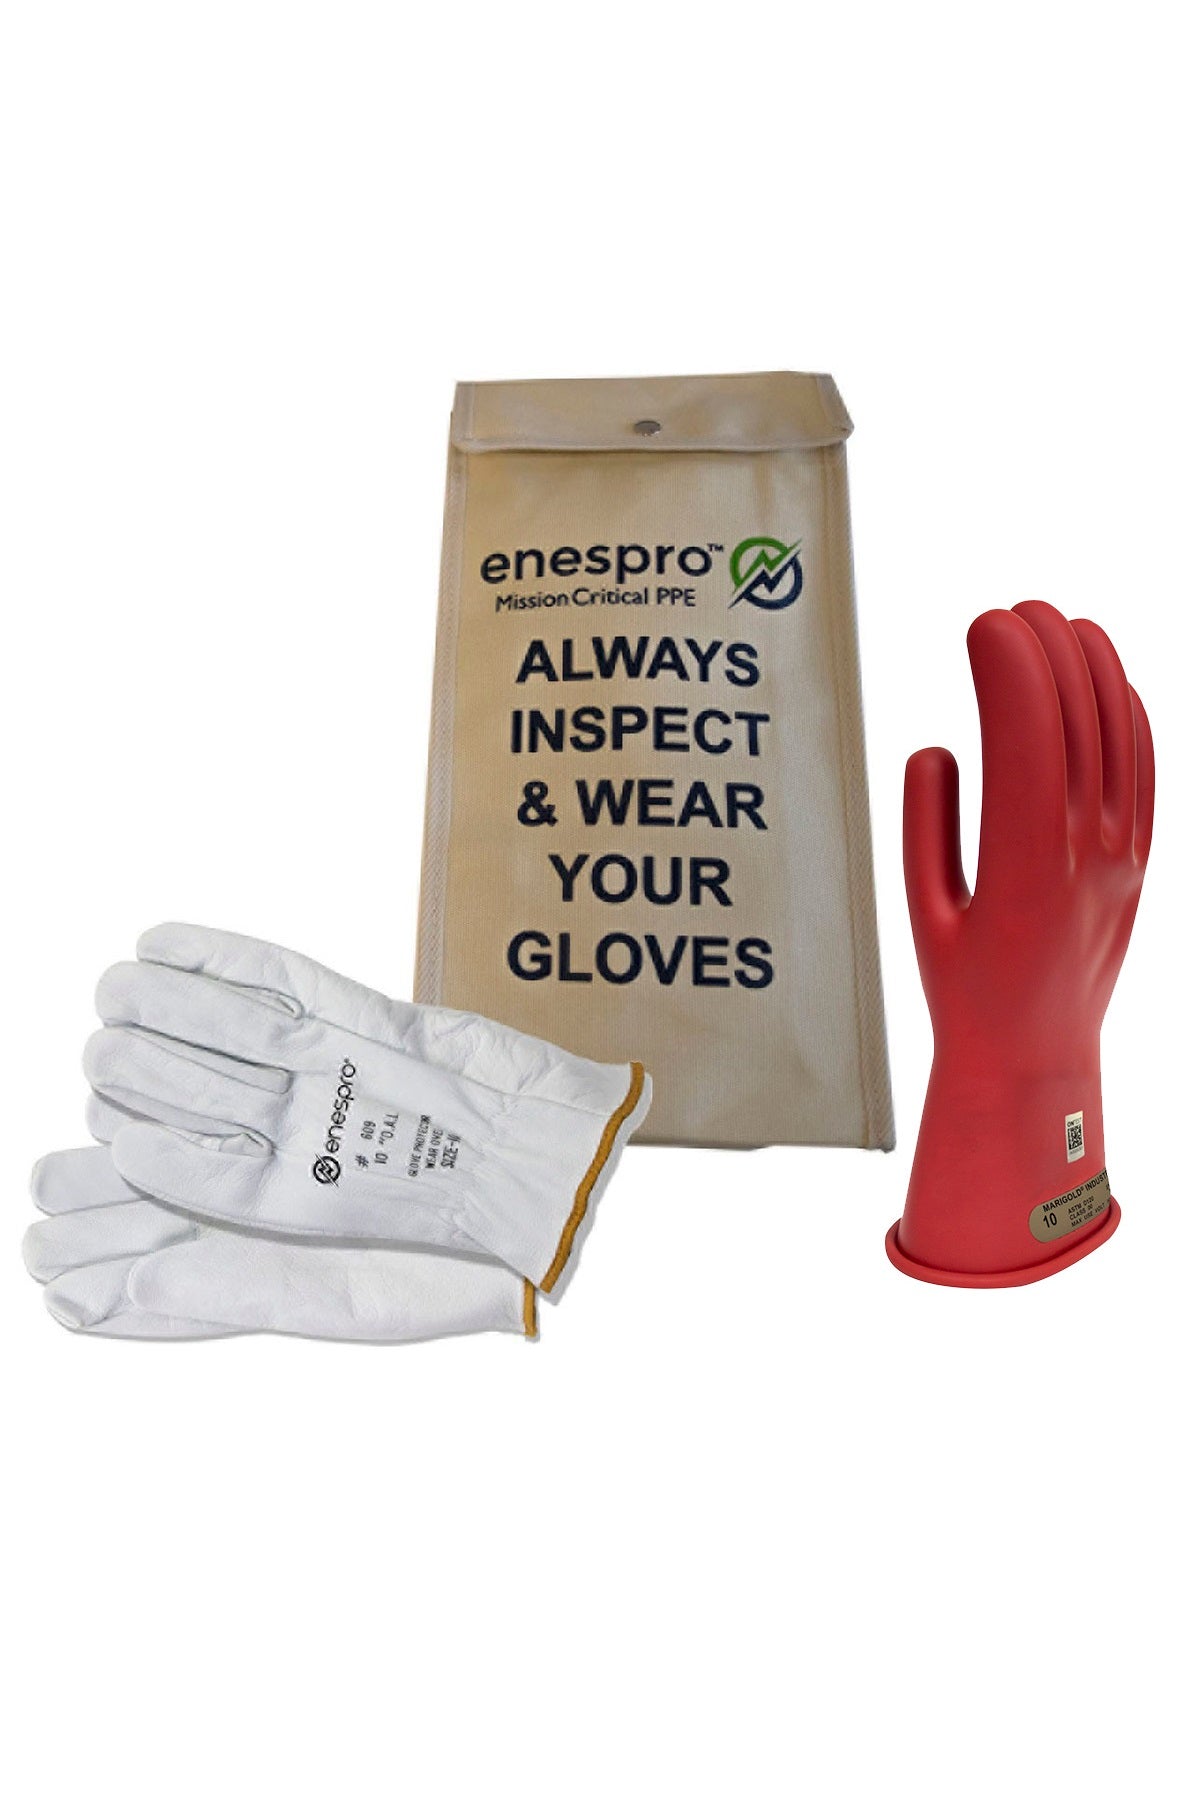 Enespro Class 00 Voltage 11" Glove Kit